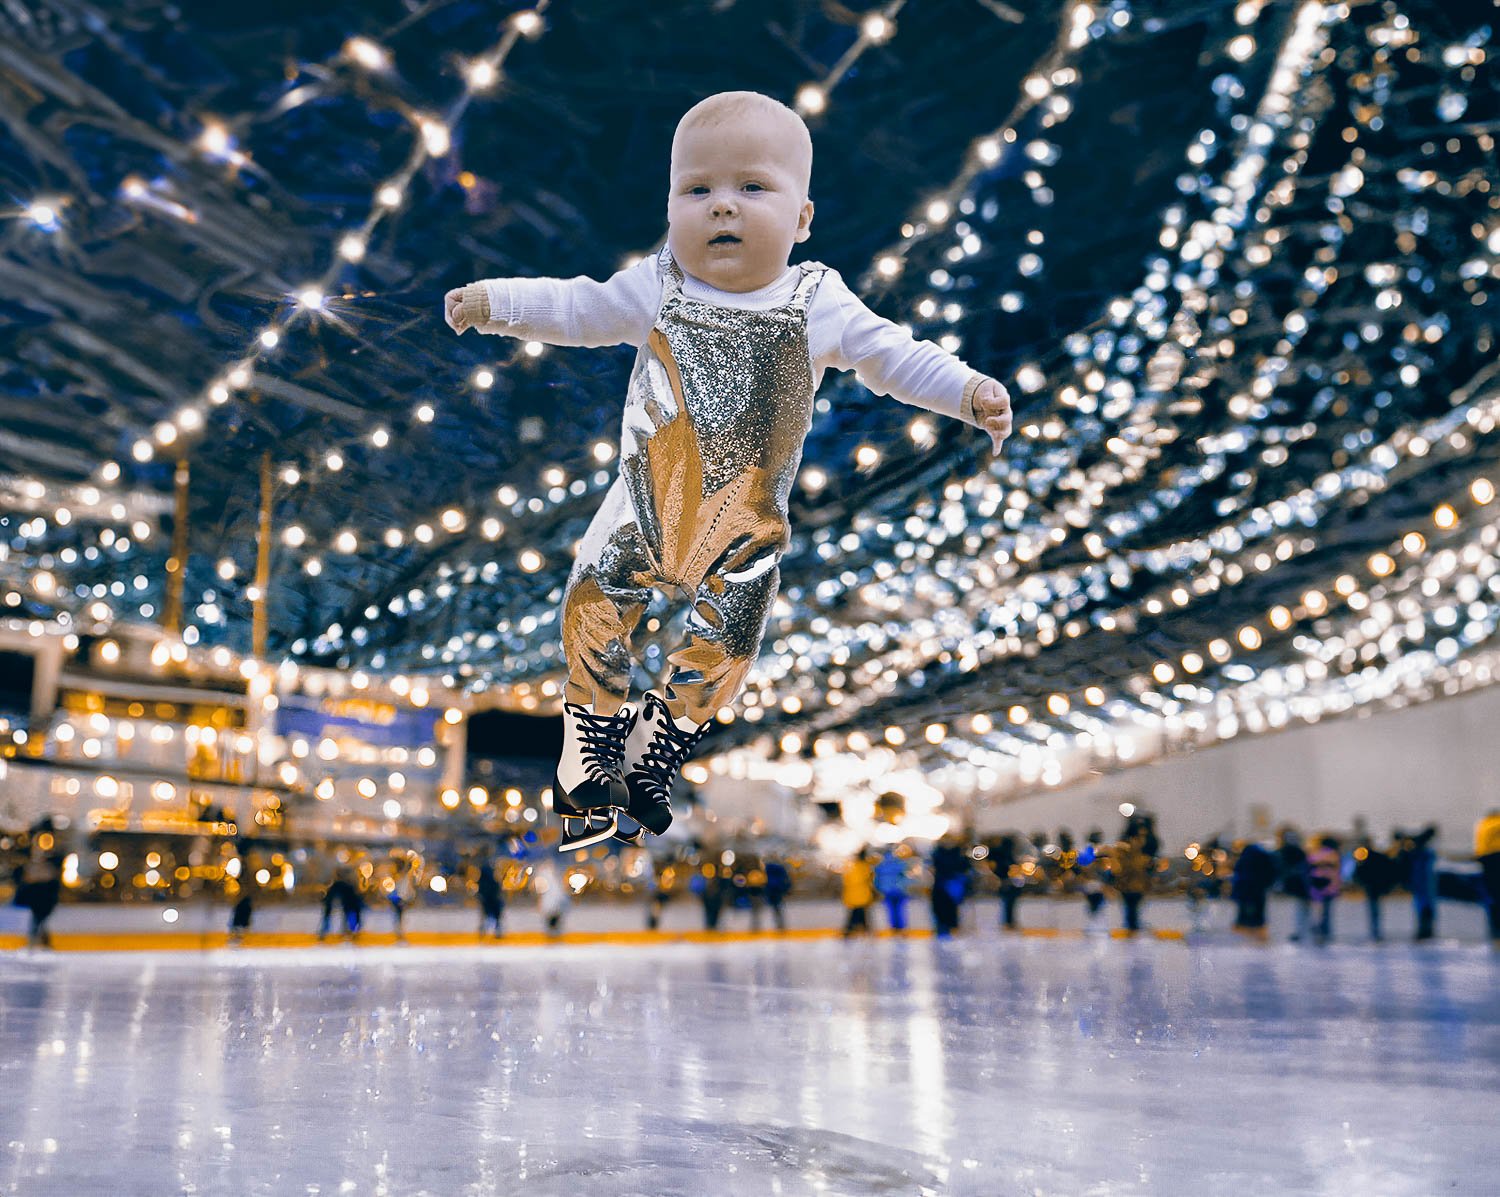 A baby boy performing ice skating jump